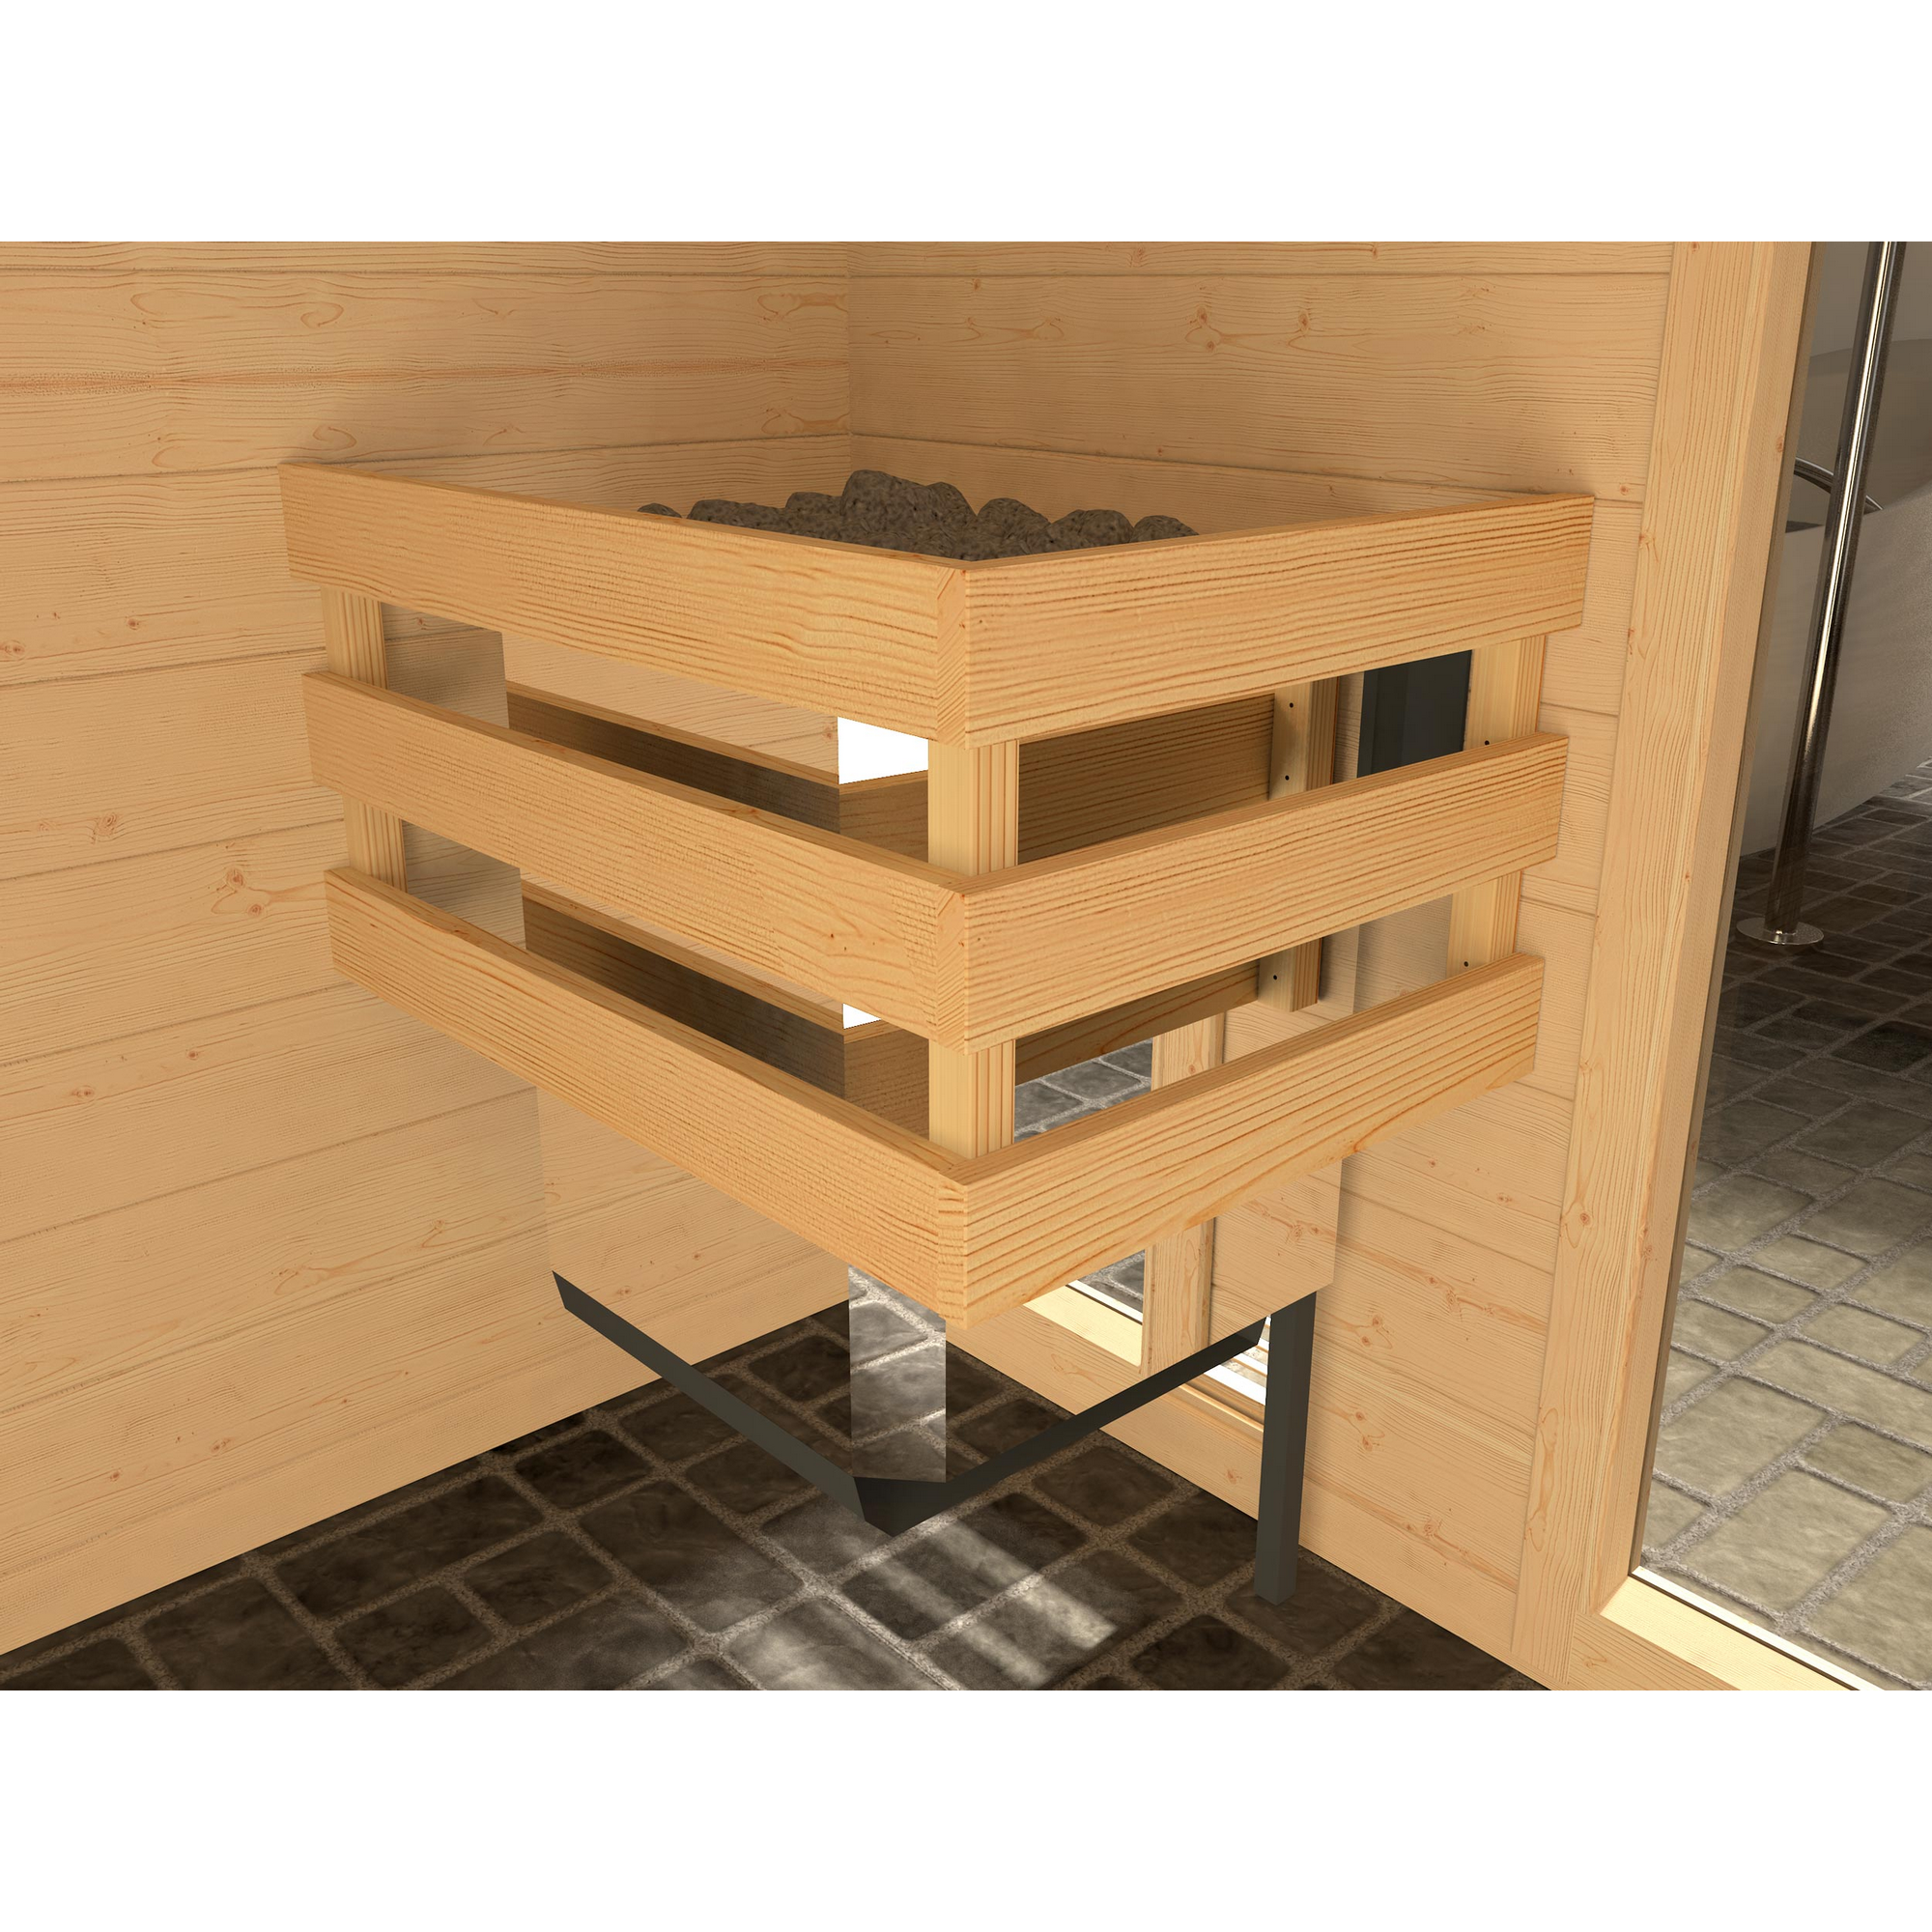 Massivholz-Sauna 'Valida 2' mit 4,5 kW OS-Ofenset, Steuerung, Glastür 187 x 137 x 203,5 cm + product picture